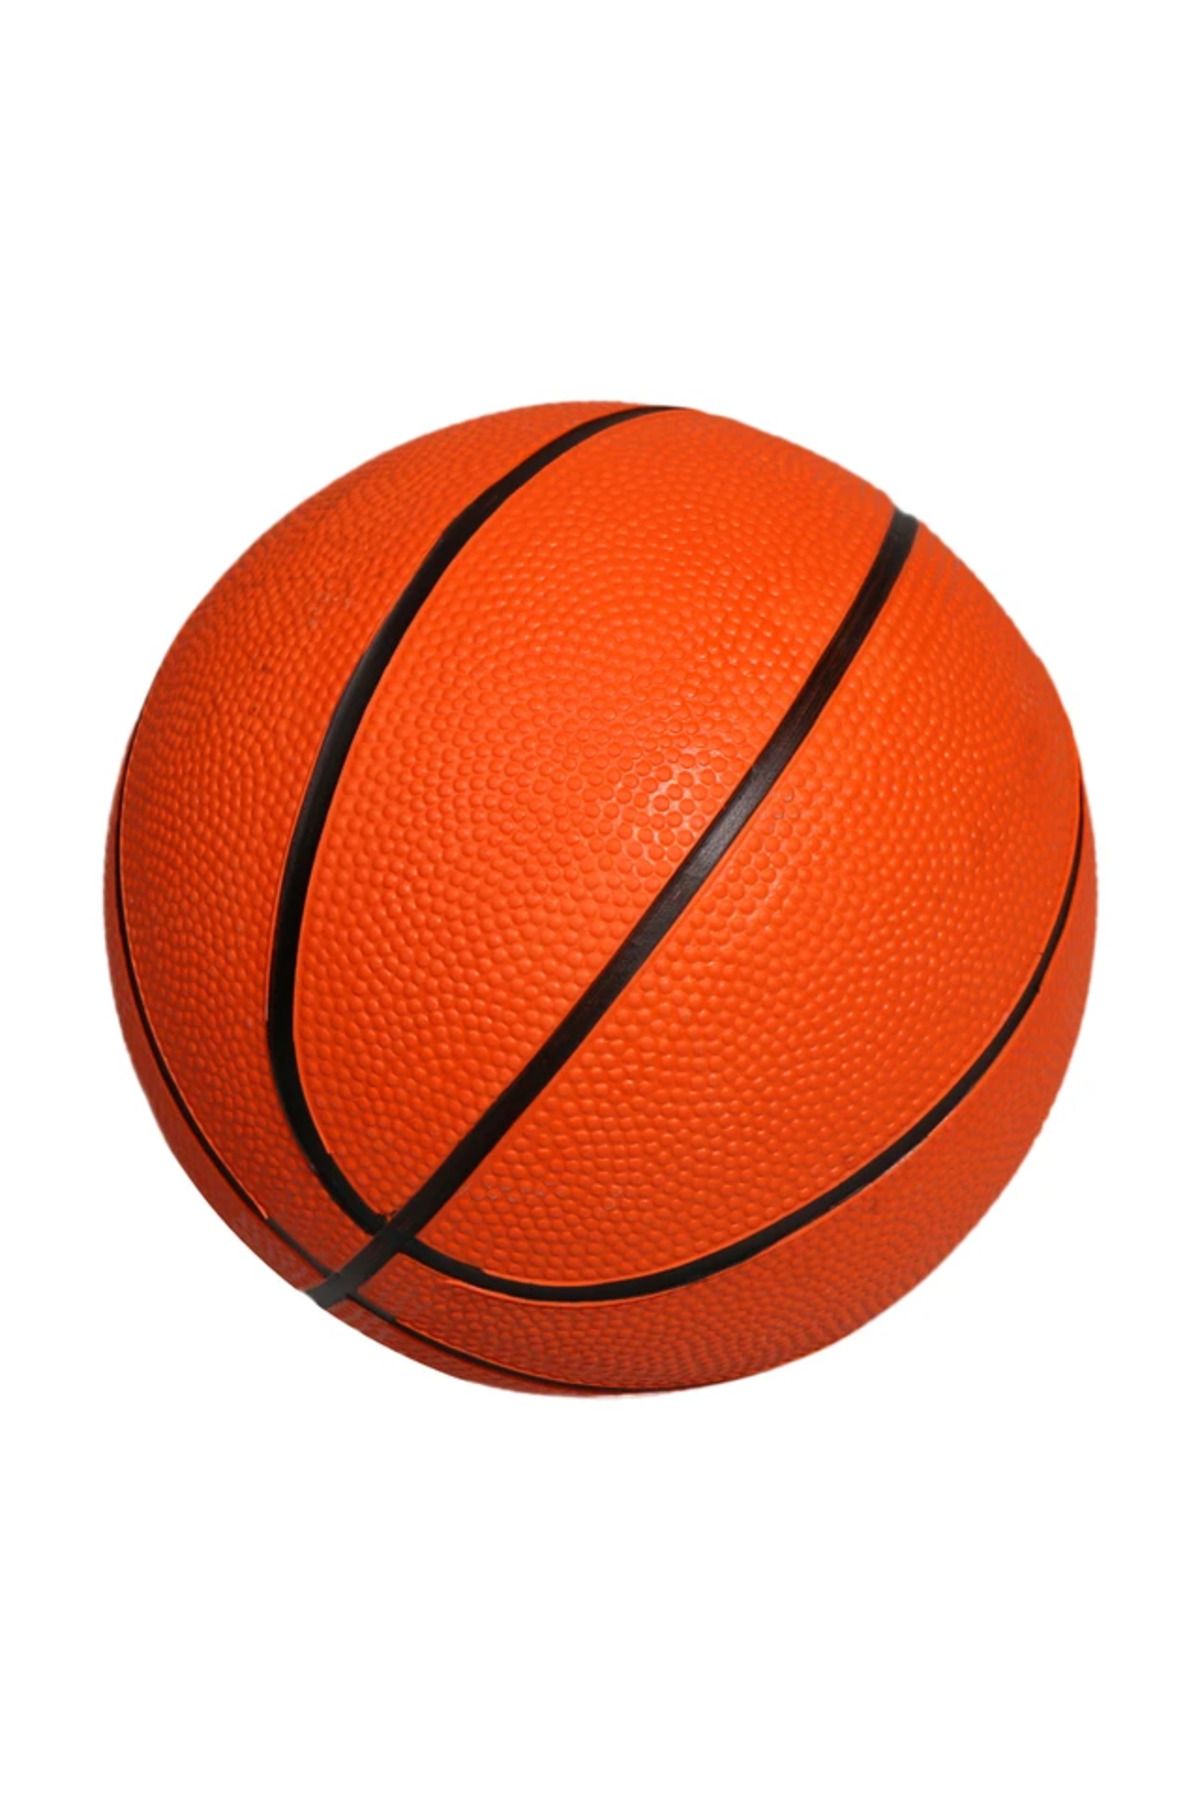 admay 3 Numara Basketbol Topu ( Çocuklar İçin )